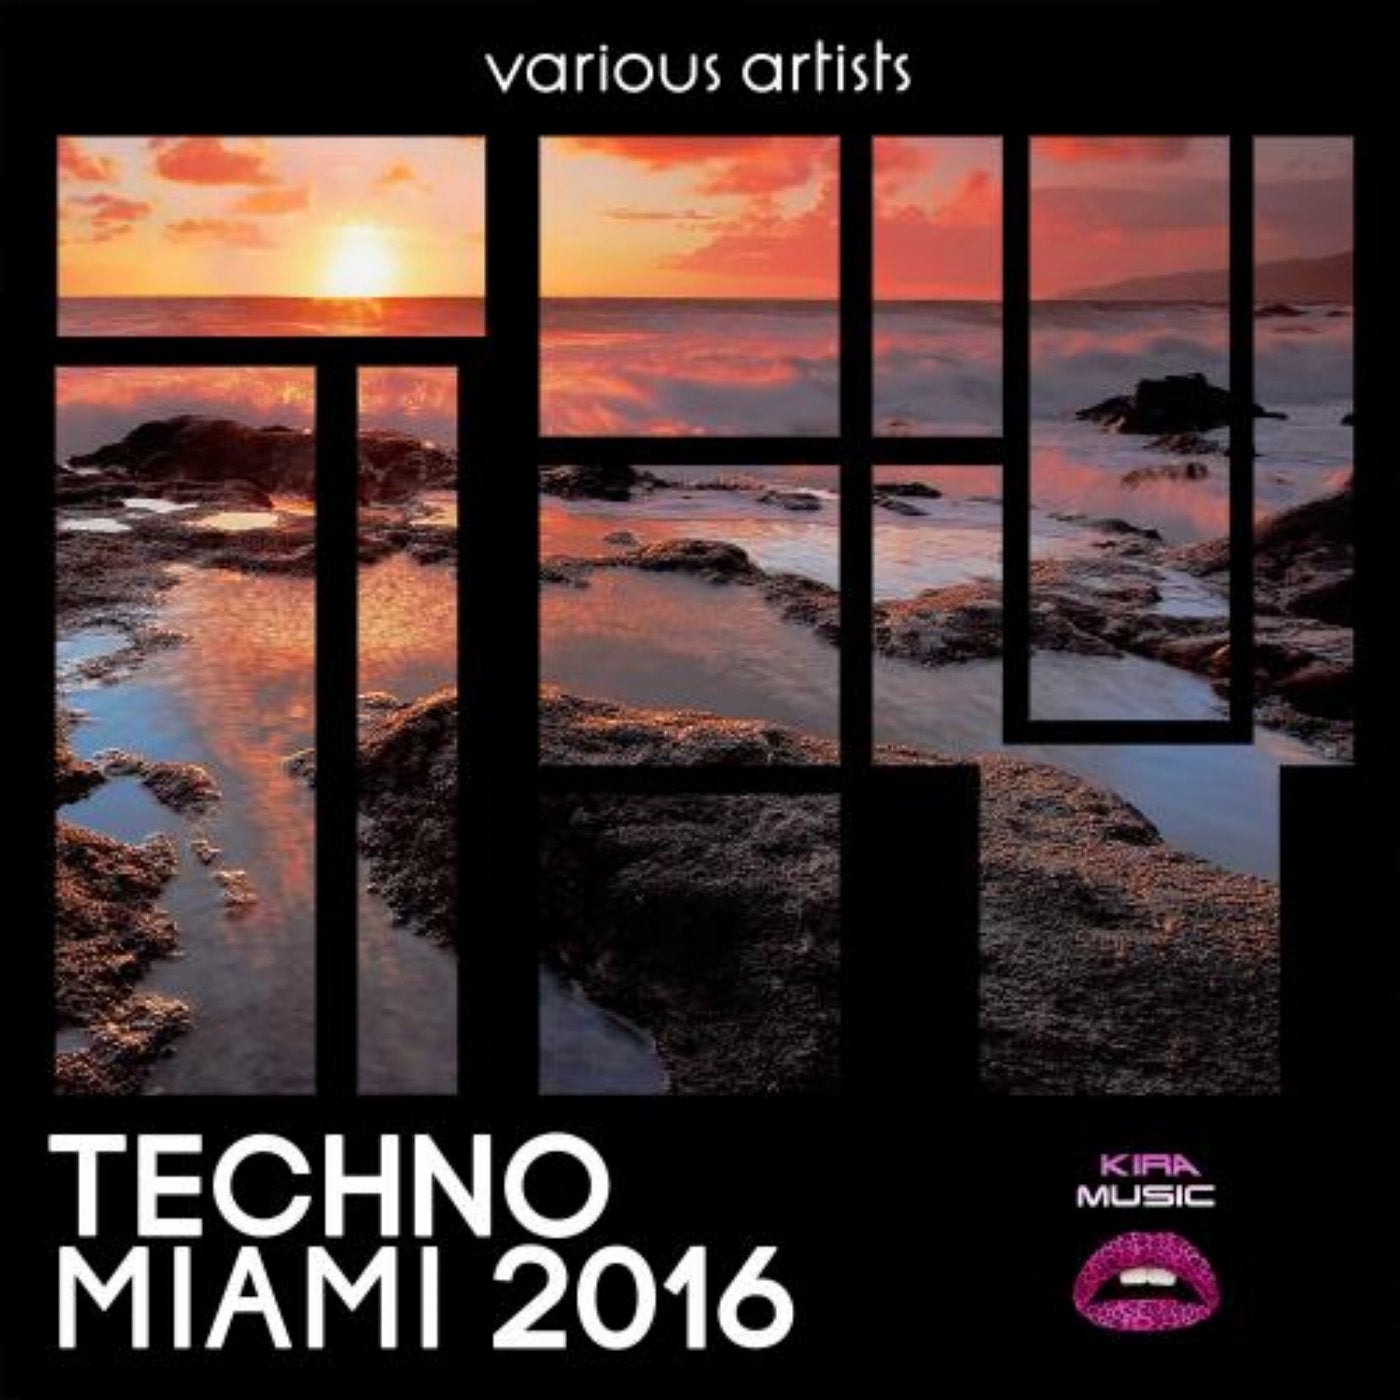 Techno Miami 2016